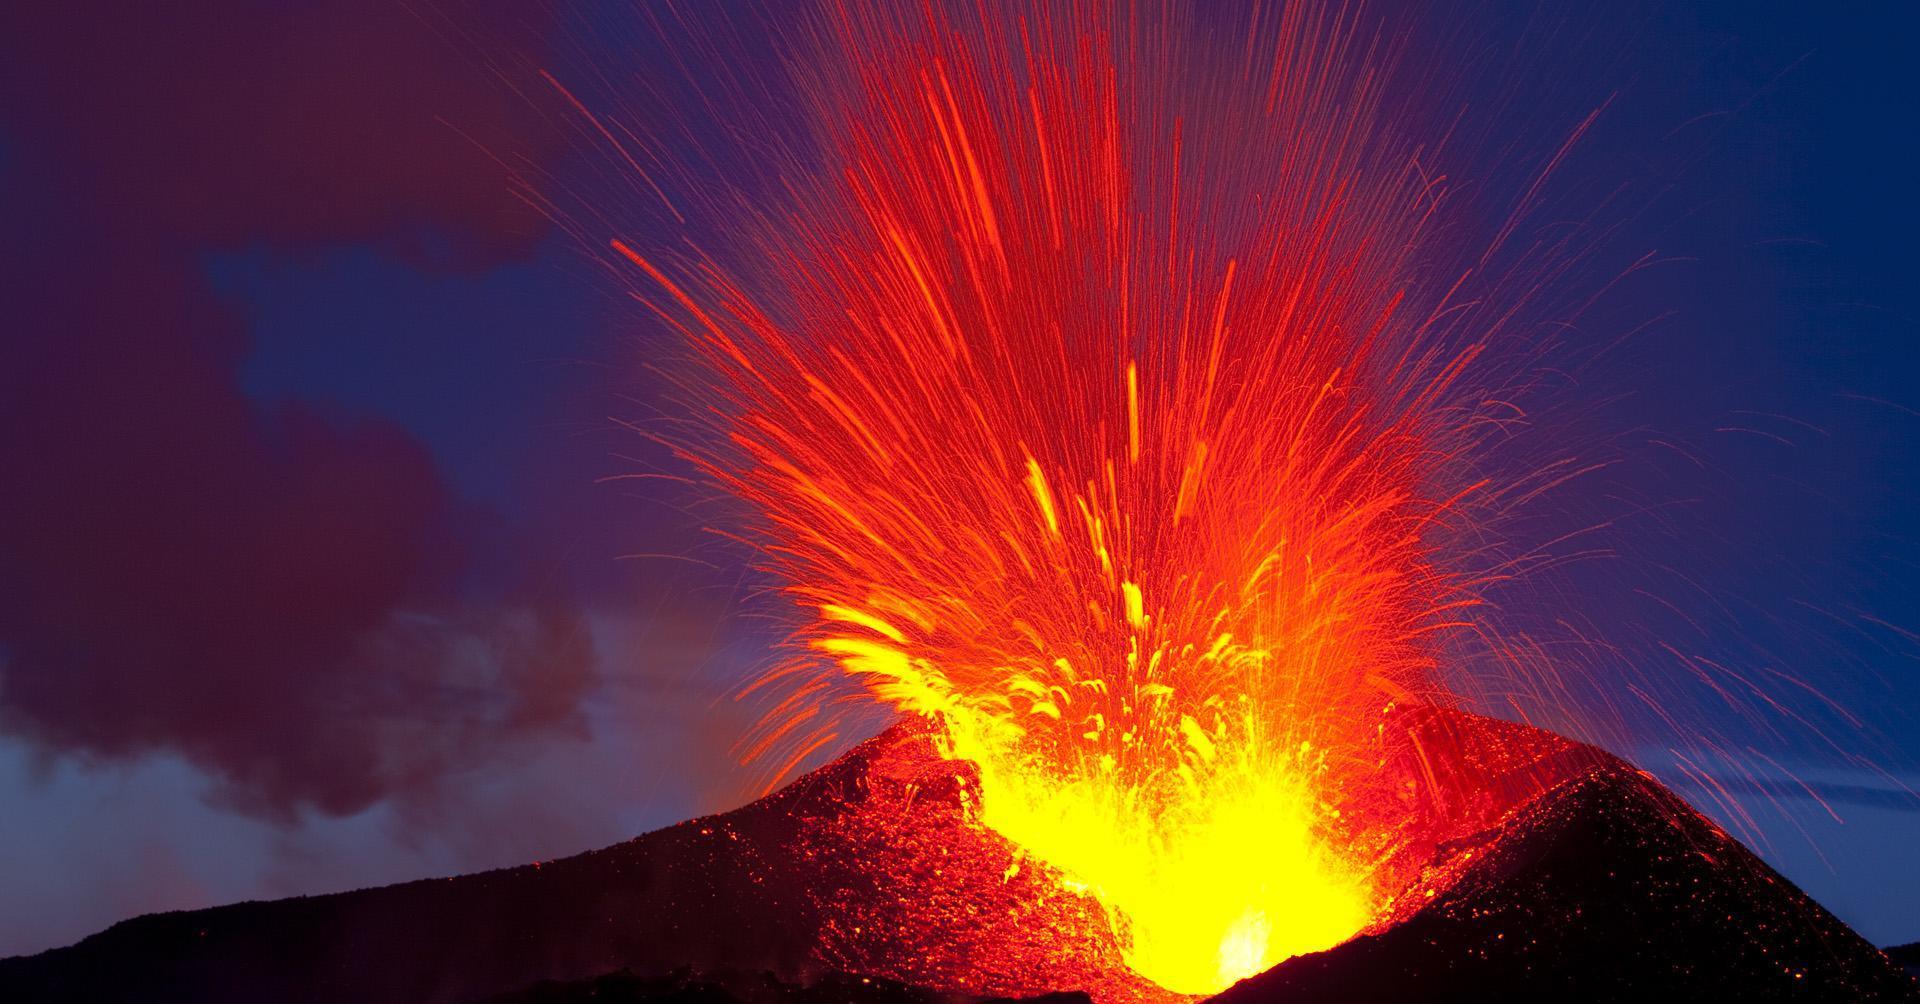 火山夕焰图片